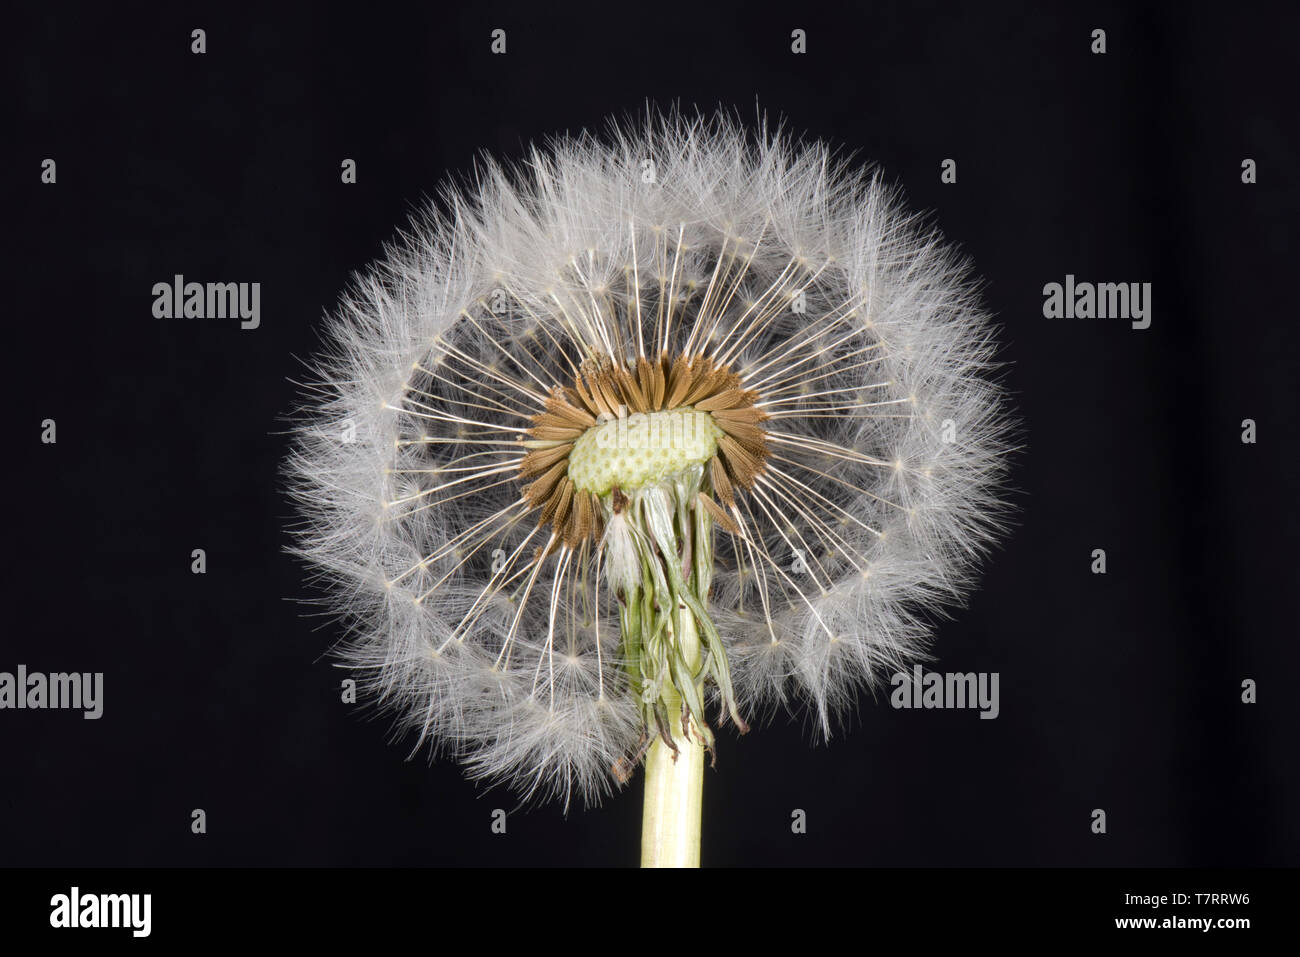 Studio Immagine di un tarassaco (Taraxacum officinale) seme head mostra pappus, becco e achene per la dispersione del vento Foto Stock